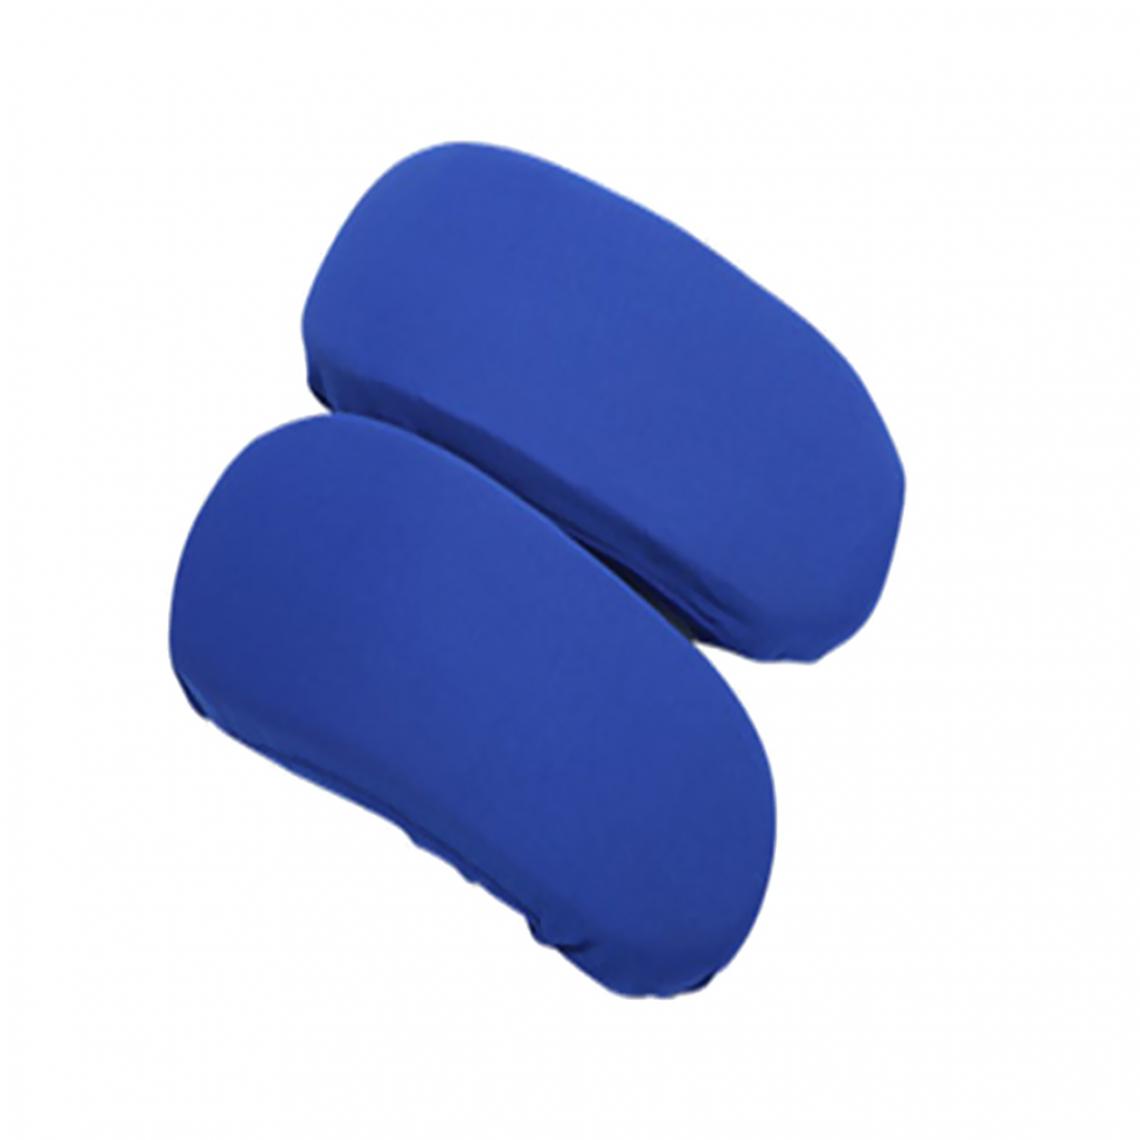 marque generique - 1 paire chaise accoudoir couvre élastique protecteur chaise bras couverture bleu marine - Tiroir coulissant